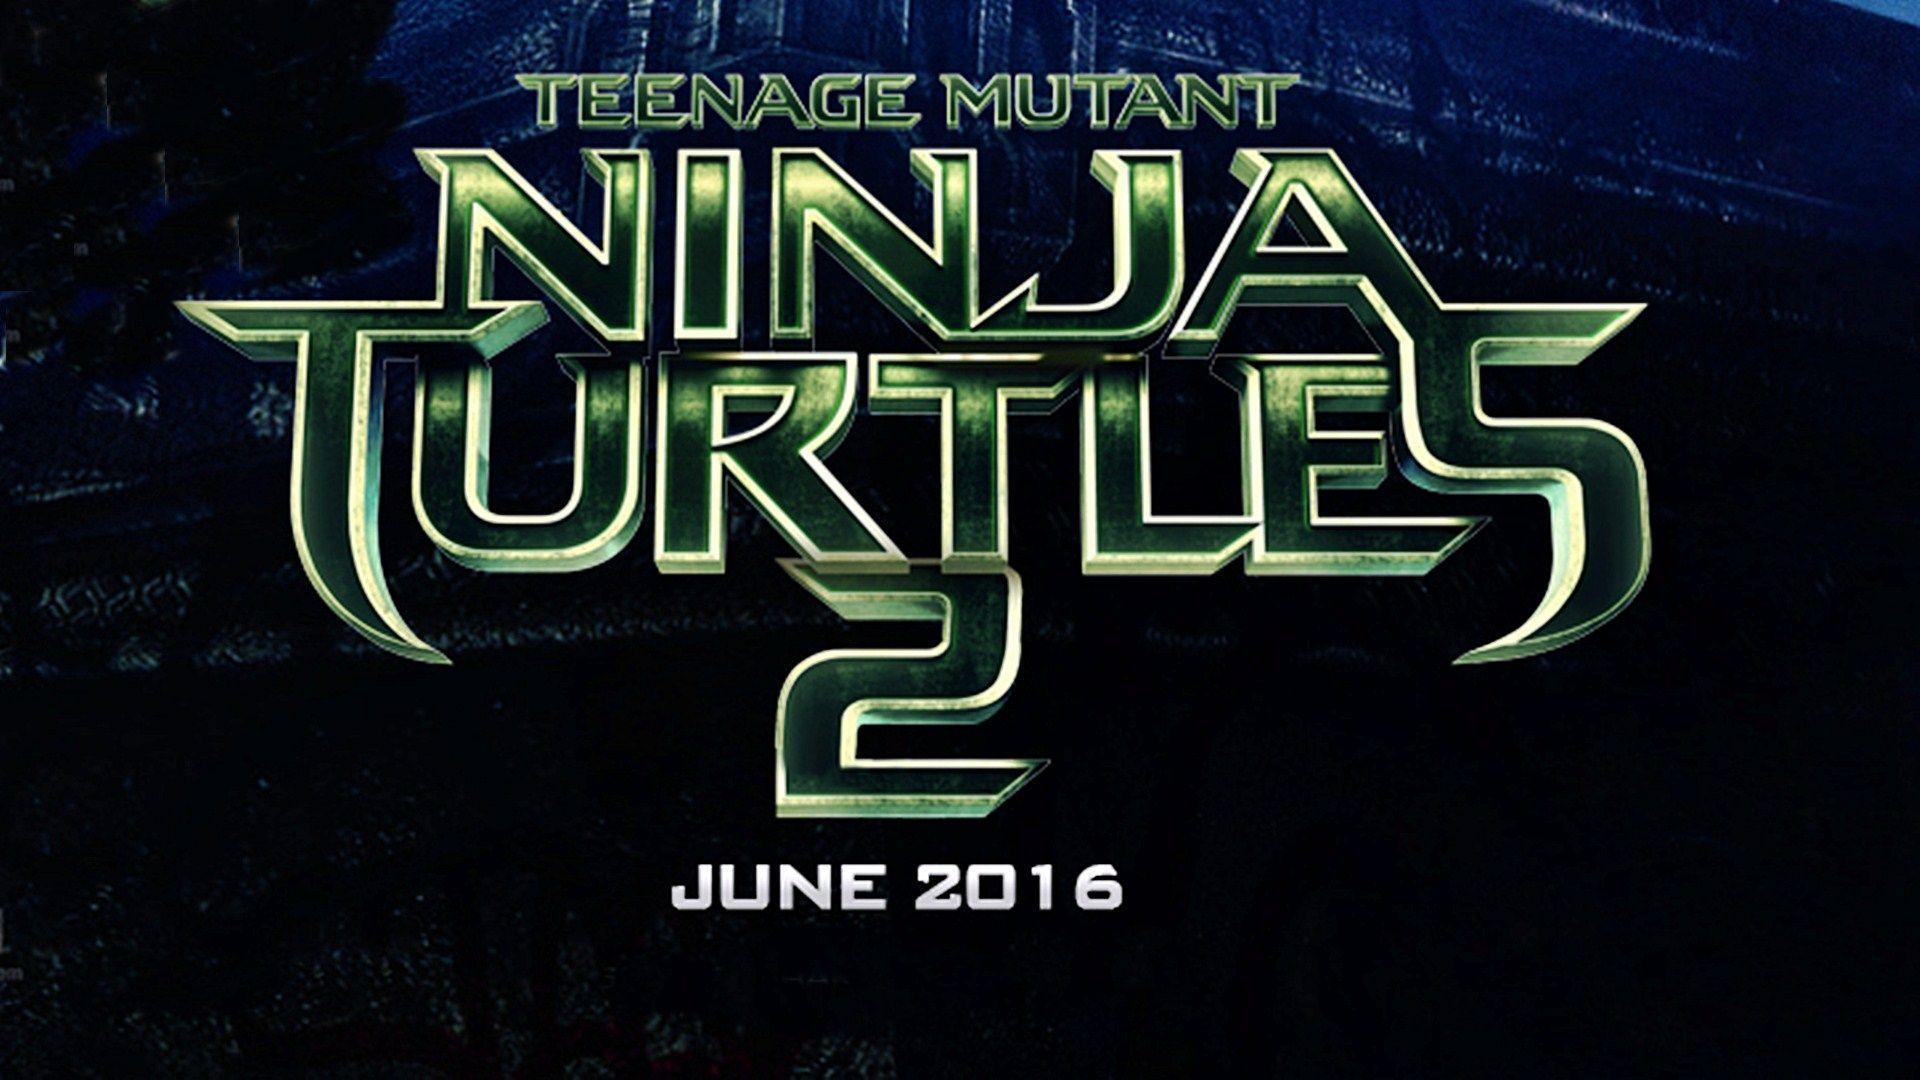 Teenage Mutant Ninja Turtles 2 Full Movie Online